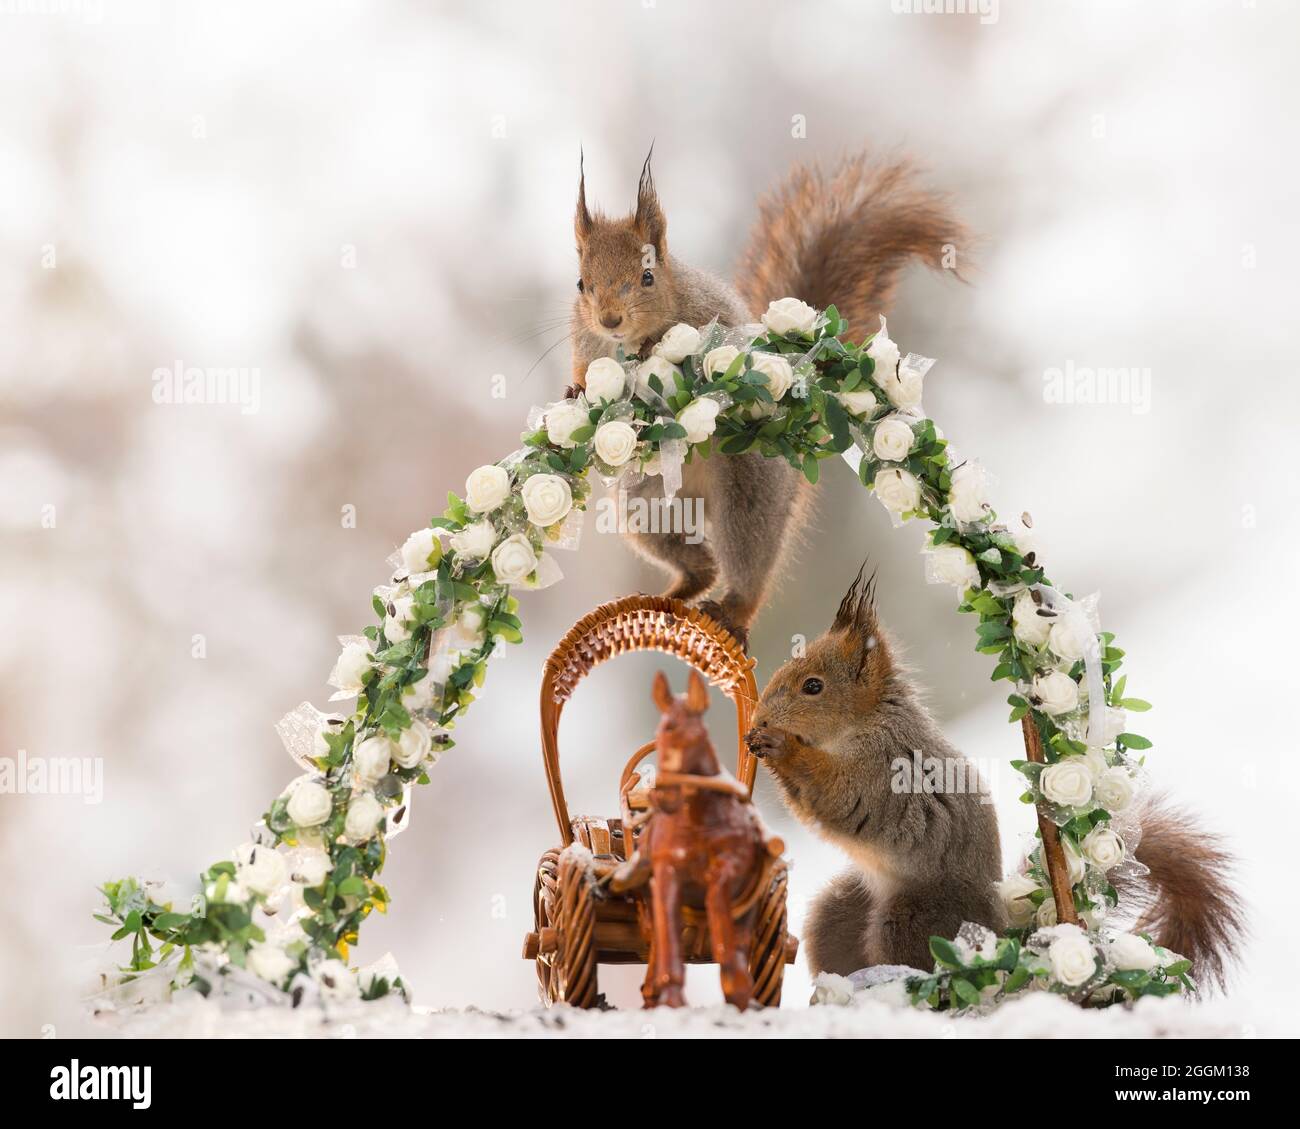 Les écureuils rouges avec un cheval, chariot et fleurs Banque D'Images